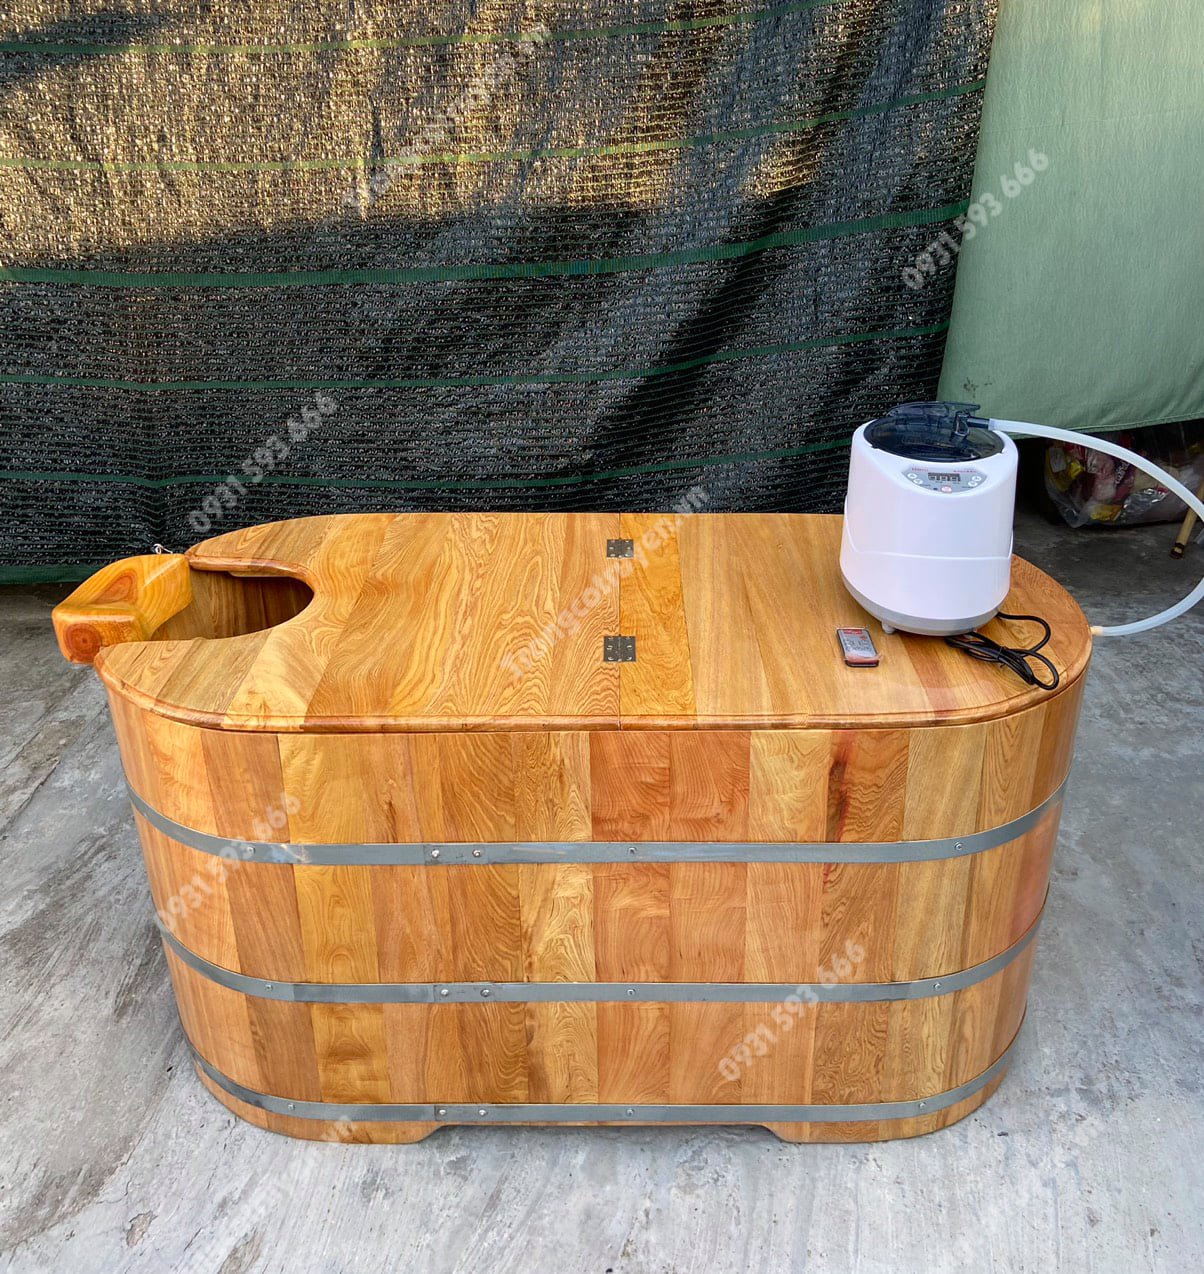 sử dụng bồn tắm gỗ xông hơi giúp tăng cường sức khỏe mùa dịch